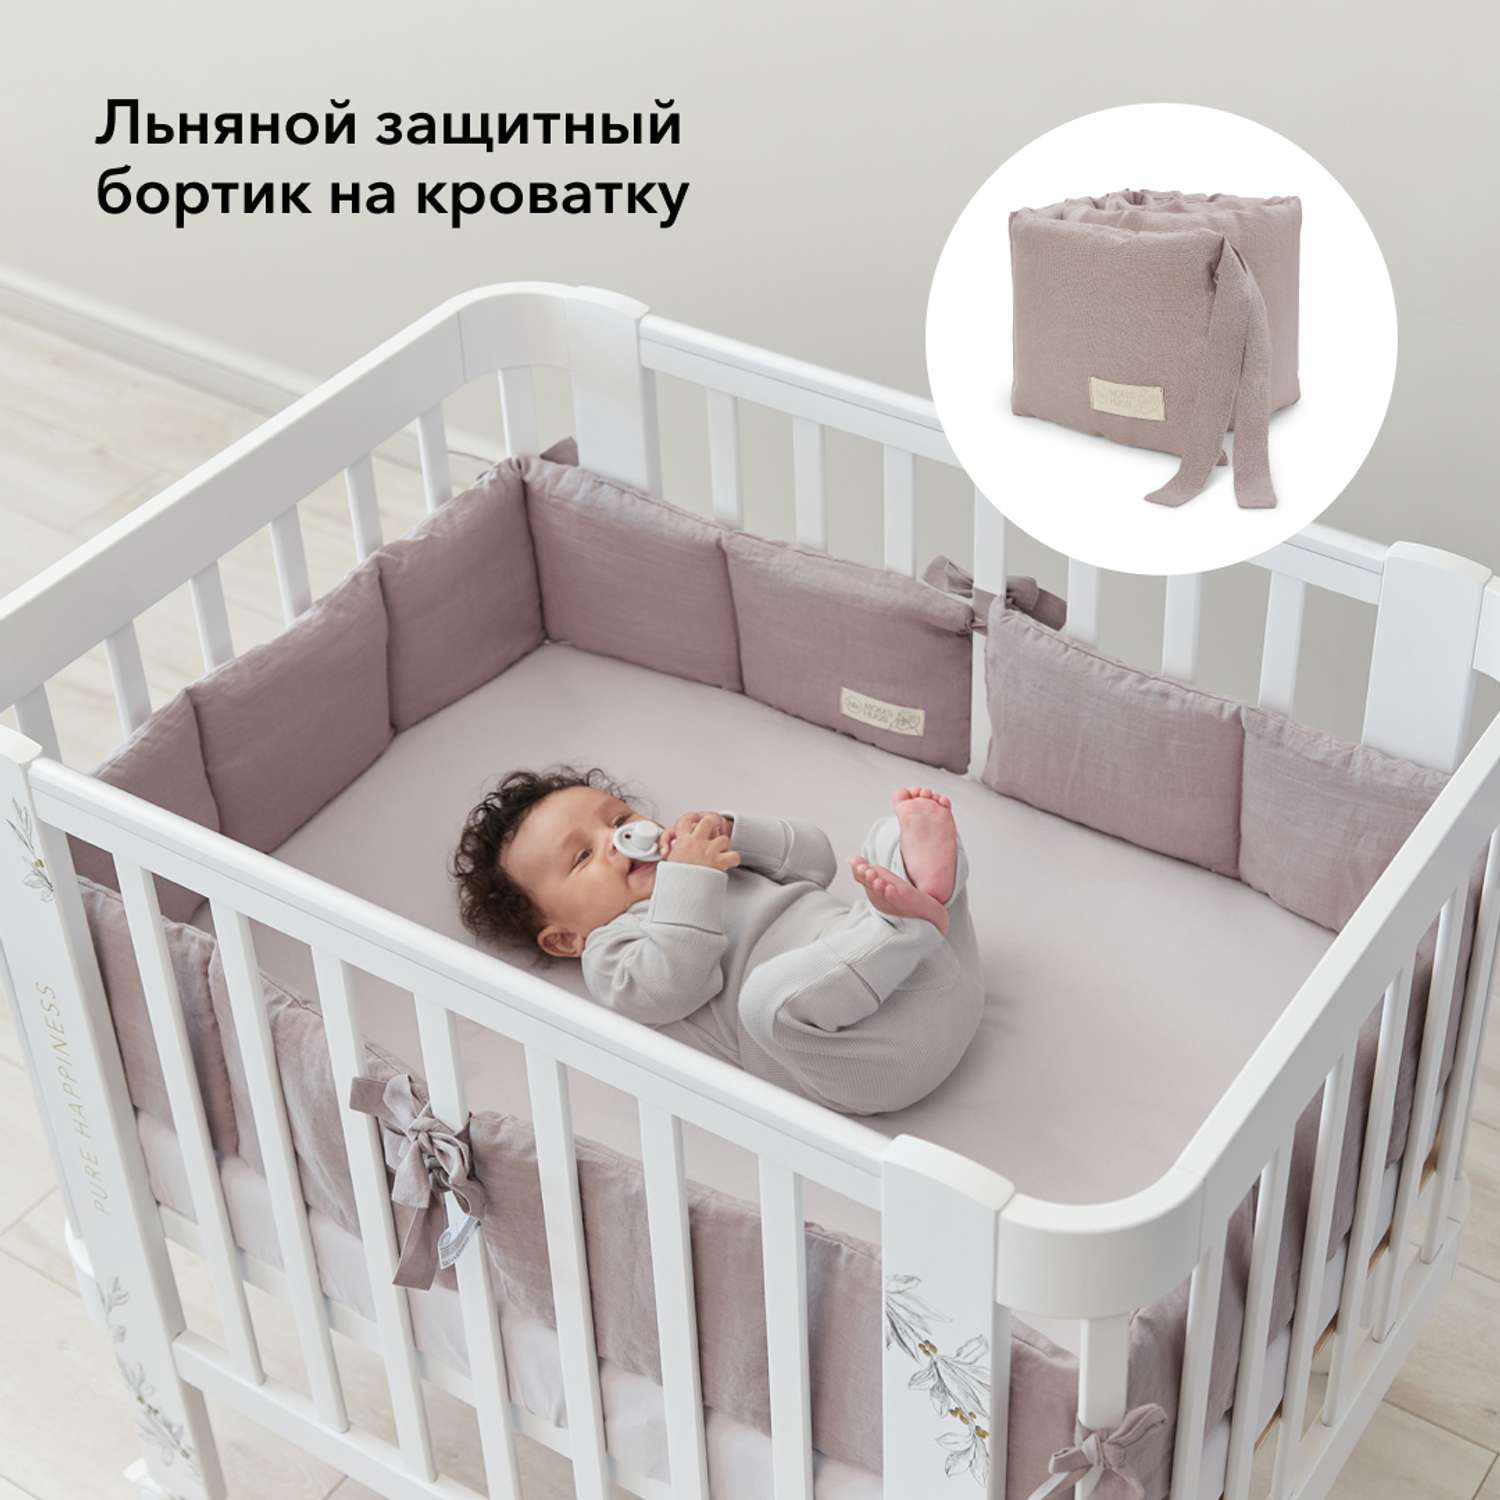 Как выбрать бортик в кроватку новорожденного?